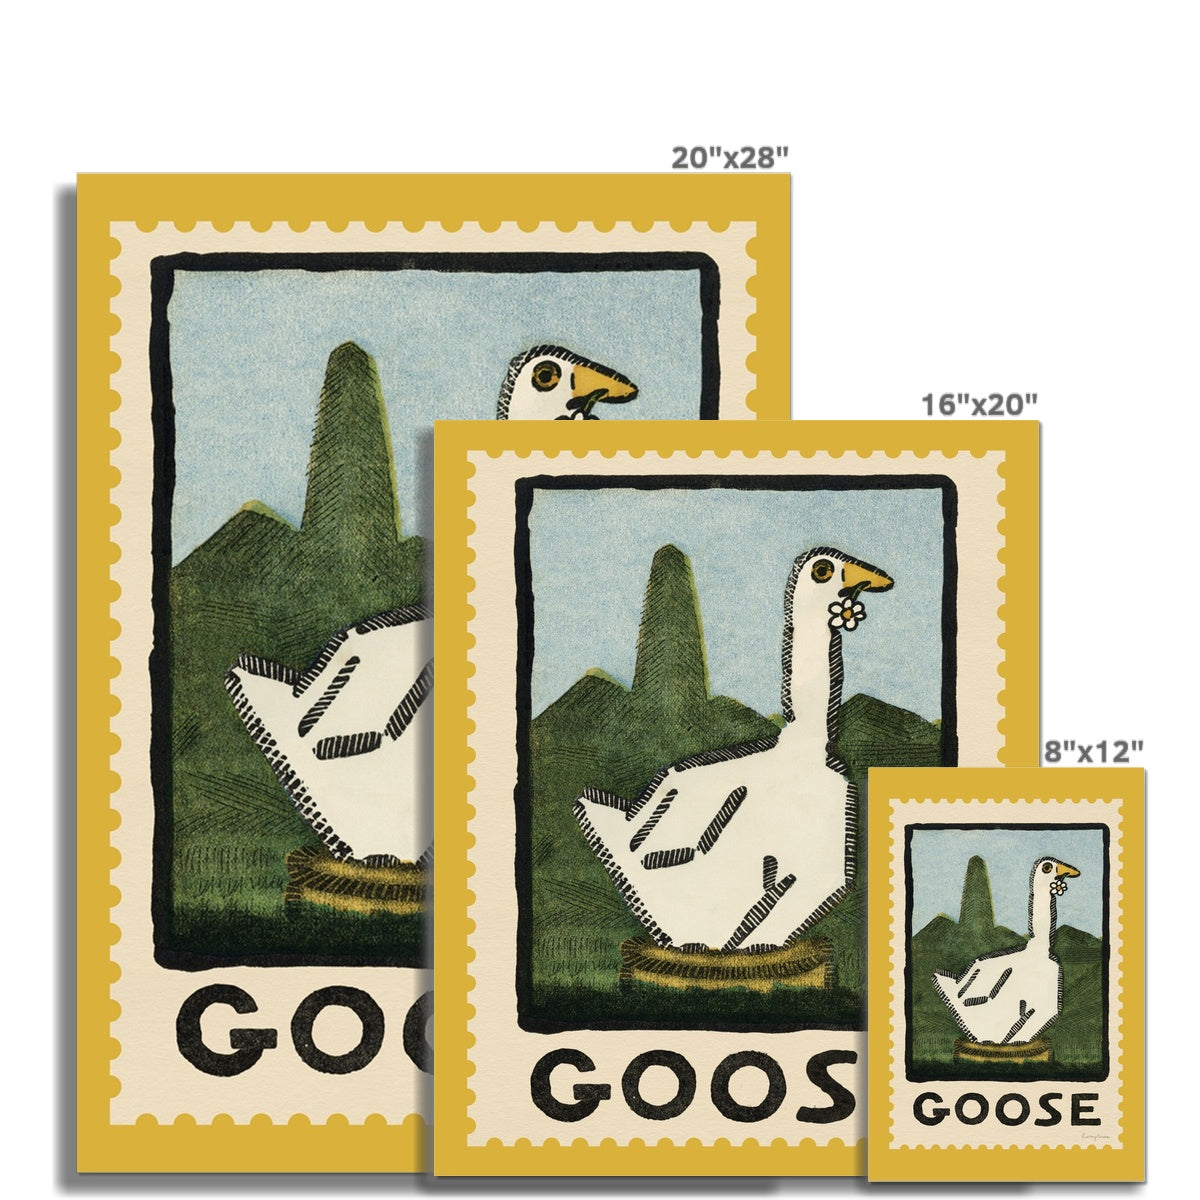 Goose Vintage Postage Stamp Fine Art Print